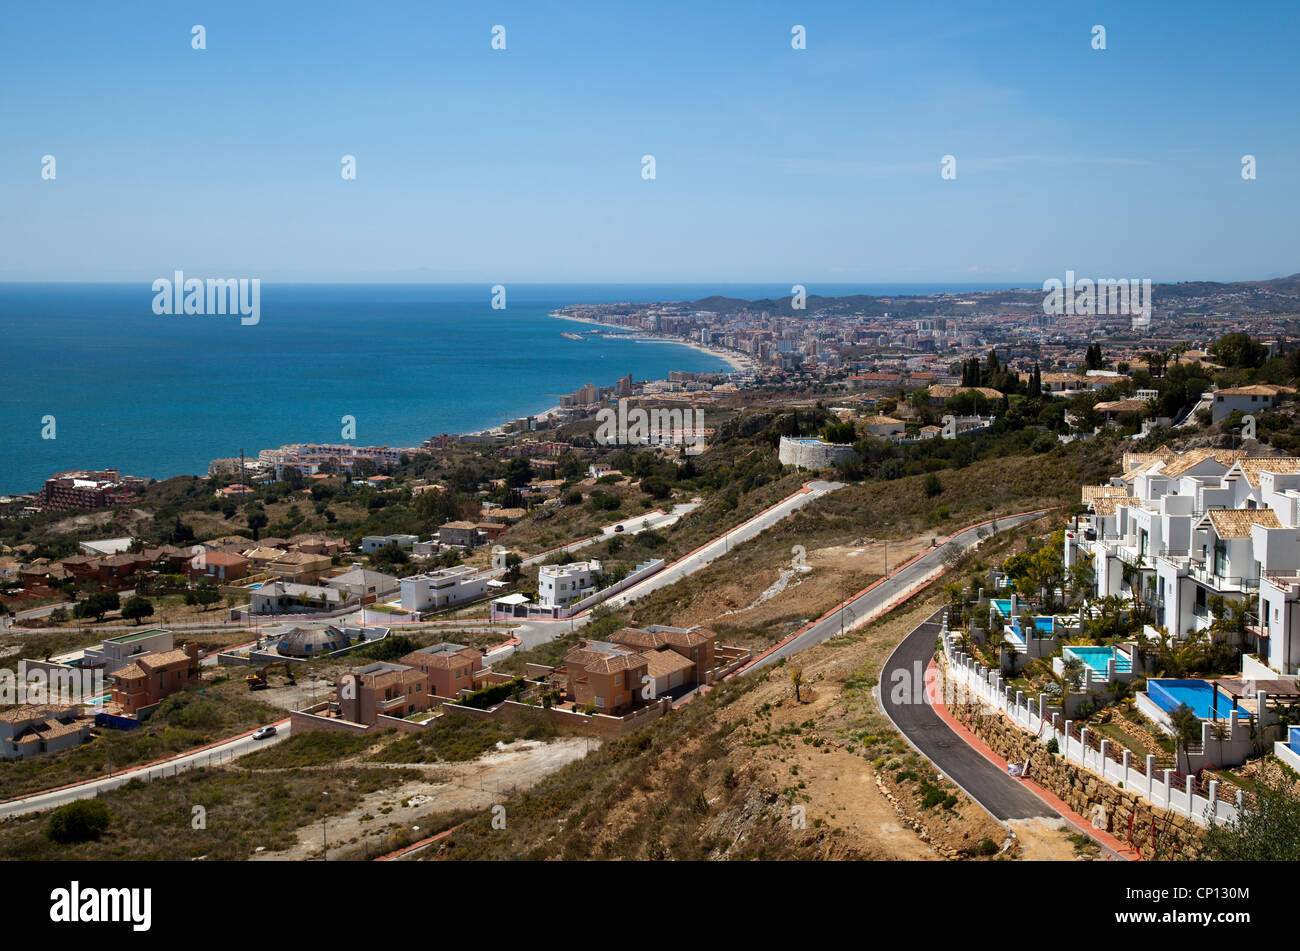 View of coast near Benalmádena, Andalusia, Spain Stock Photo